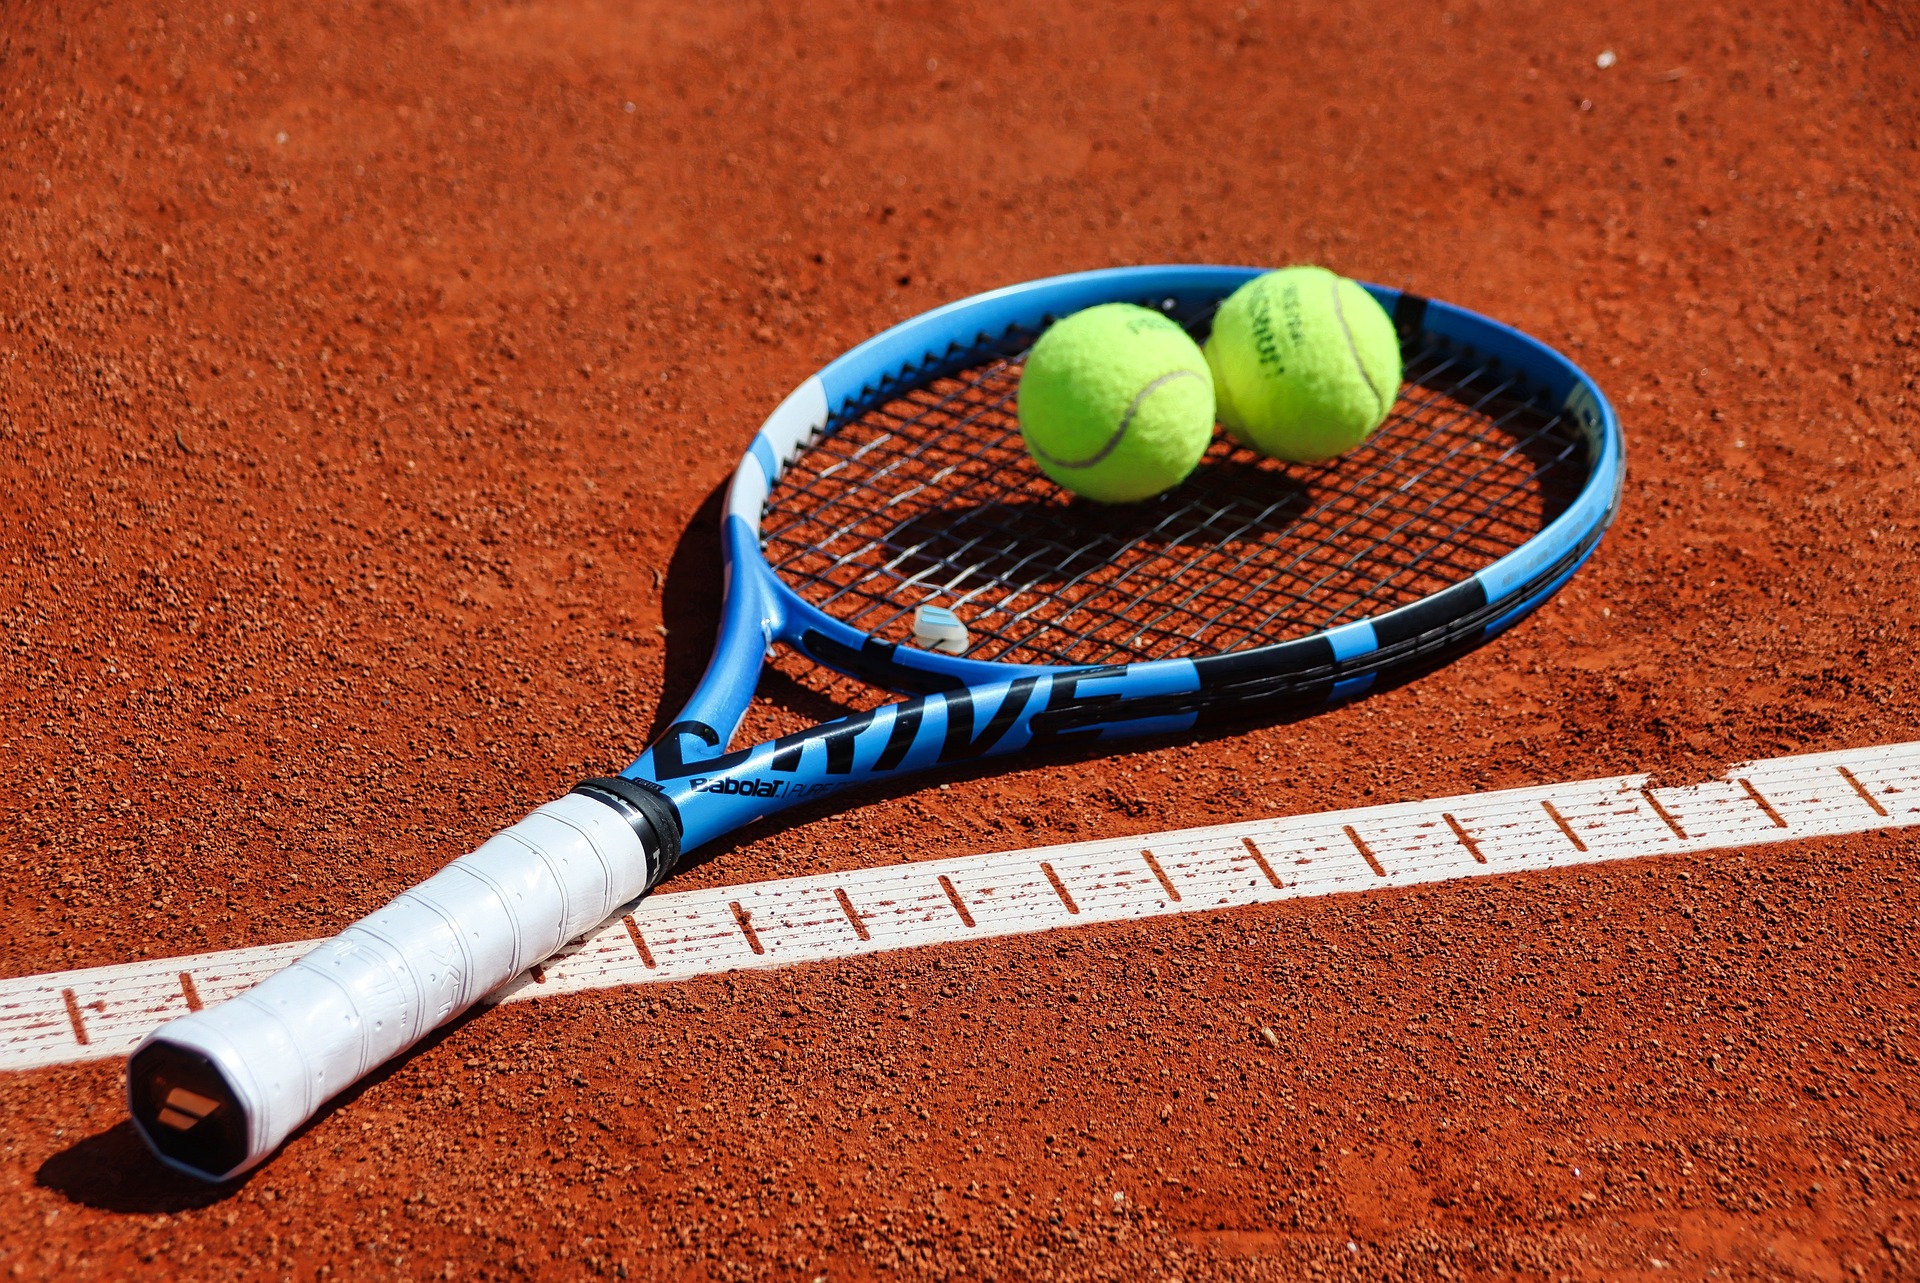 Les avantages d'utiliser un surgrip tennis - Meilleur Tennis